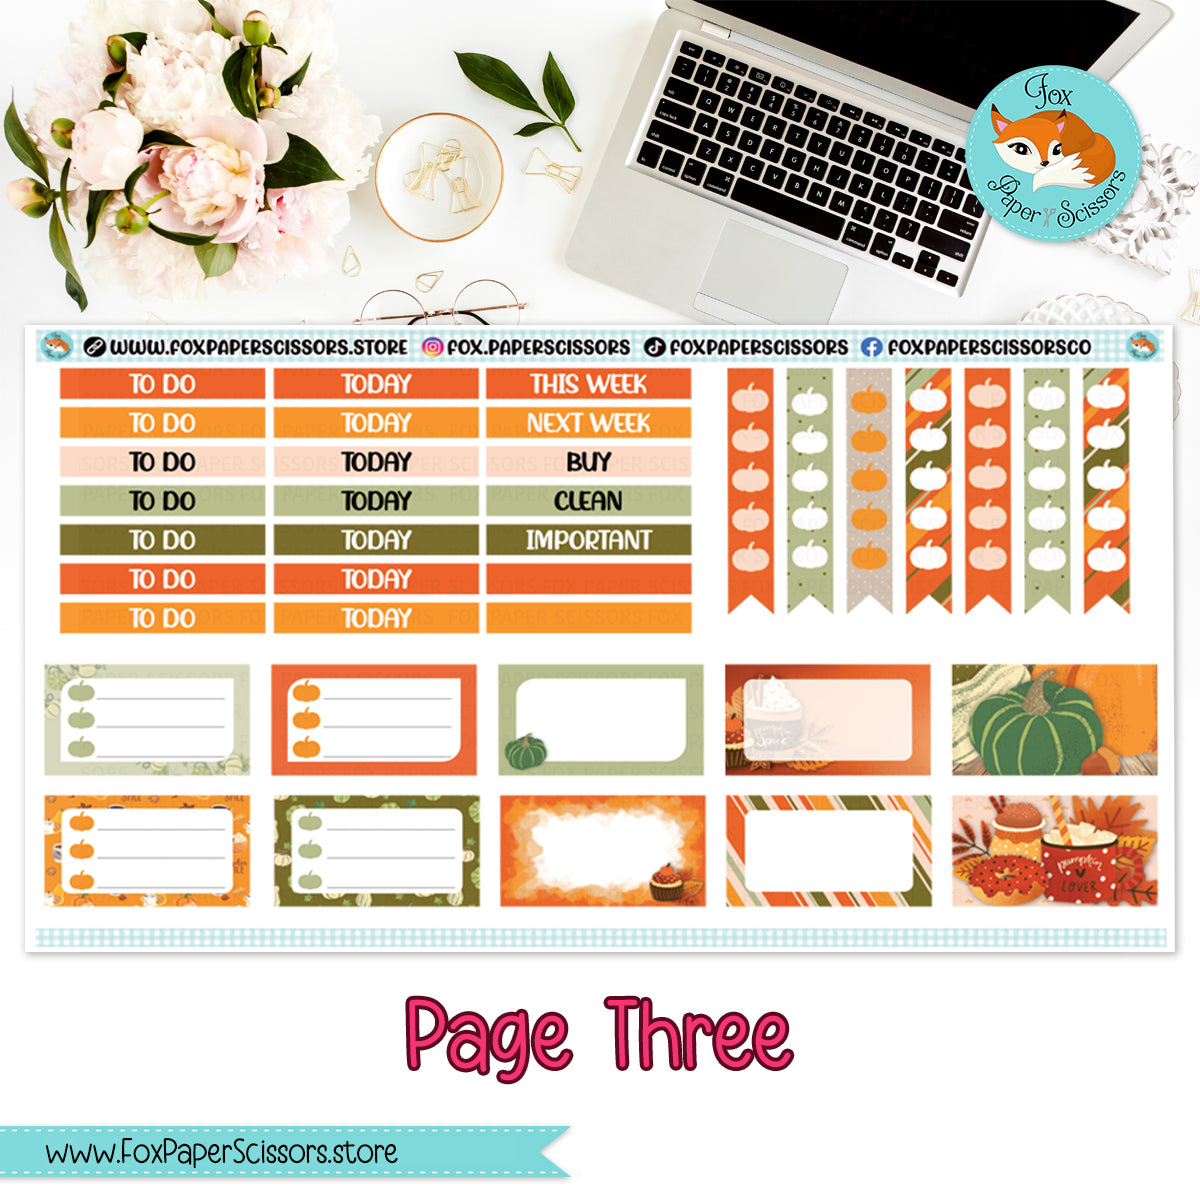 Pumpkin Spice | Weekly Planner Sticker Kit 7x9 VL